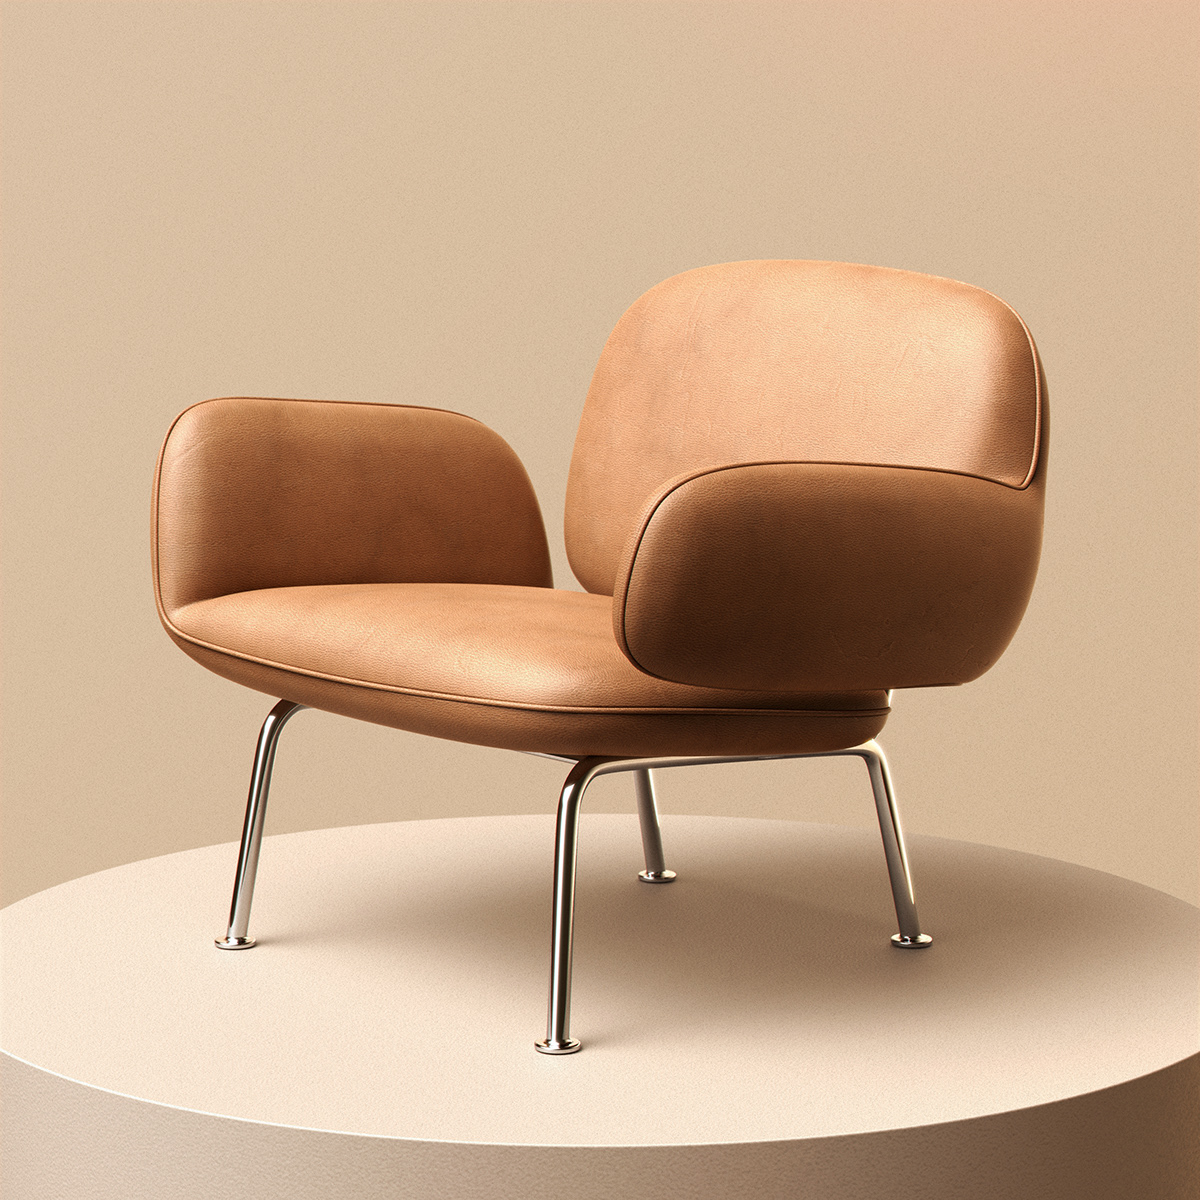 chair design furniture hug leather lounge metal modern upholstered vr